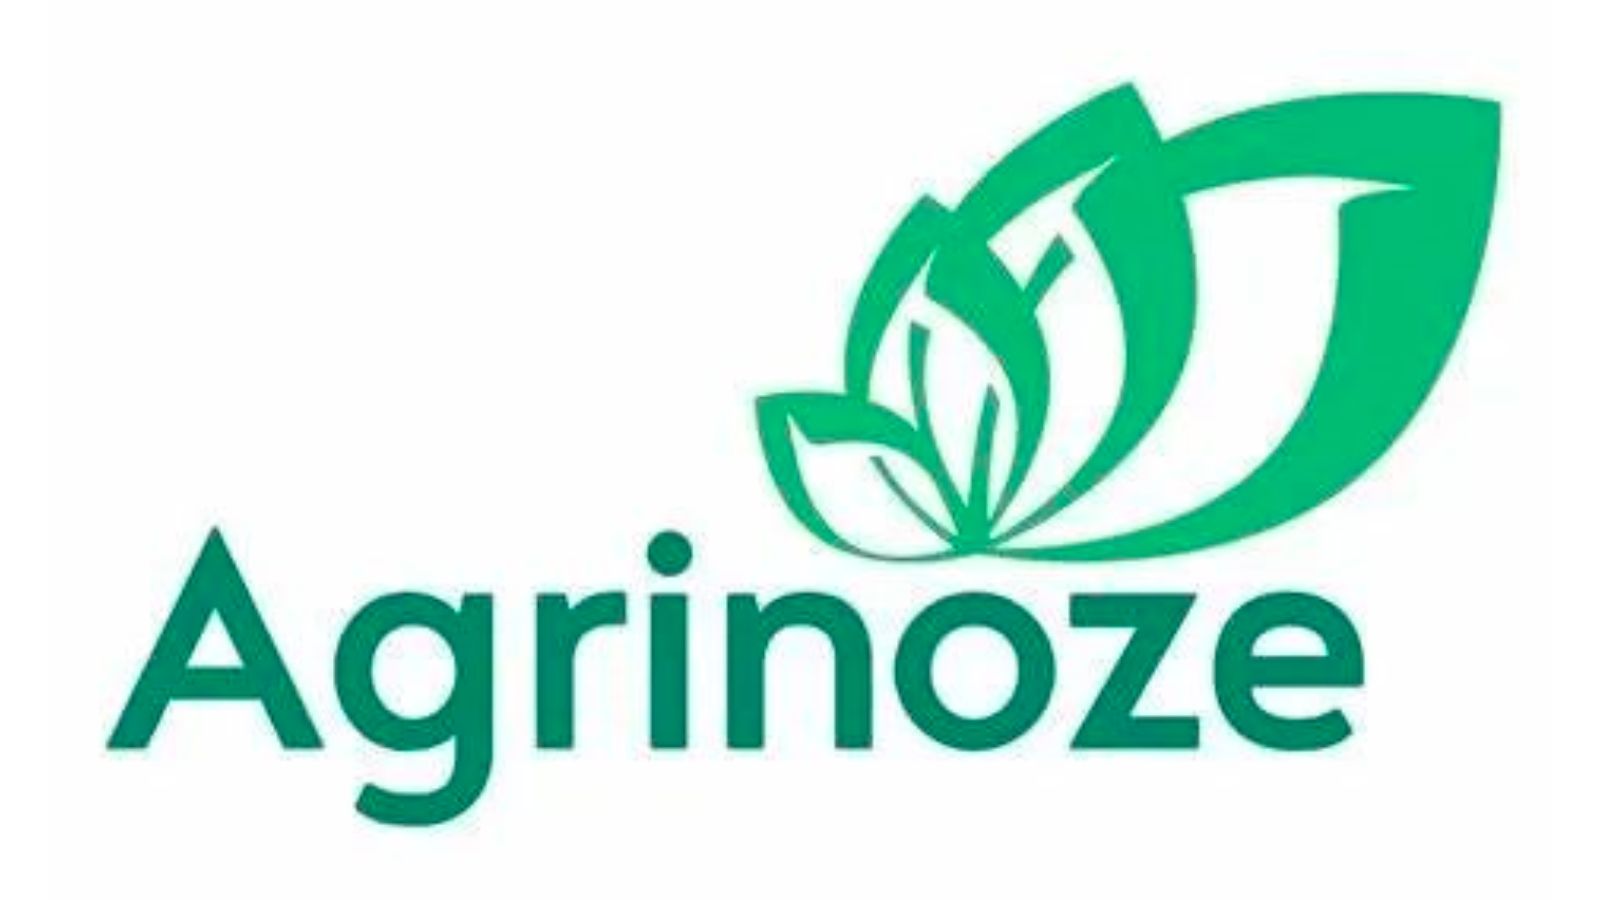 Agrinoze，提供世界上唯一可扩展的自主自动灌溉和施肥解决方案